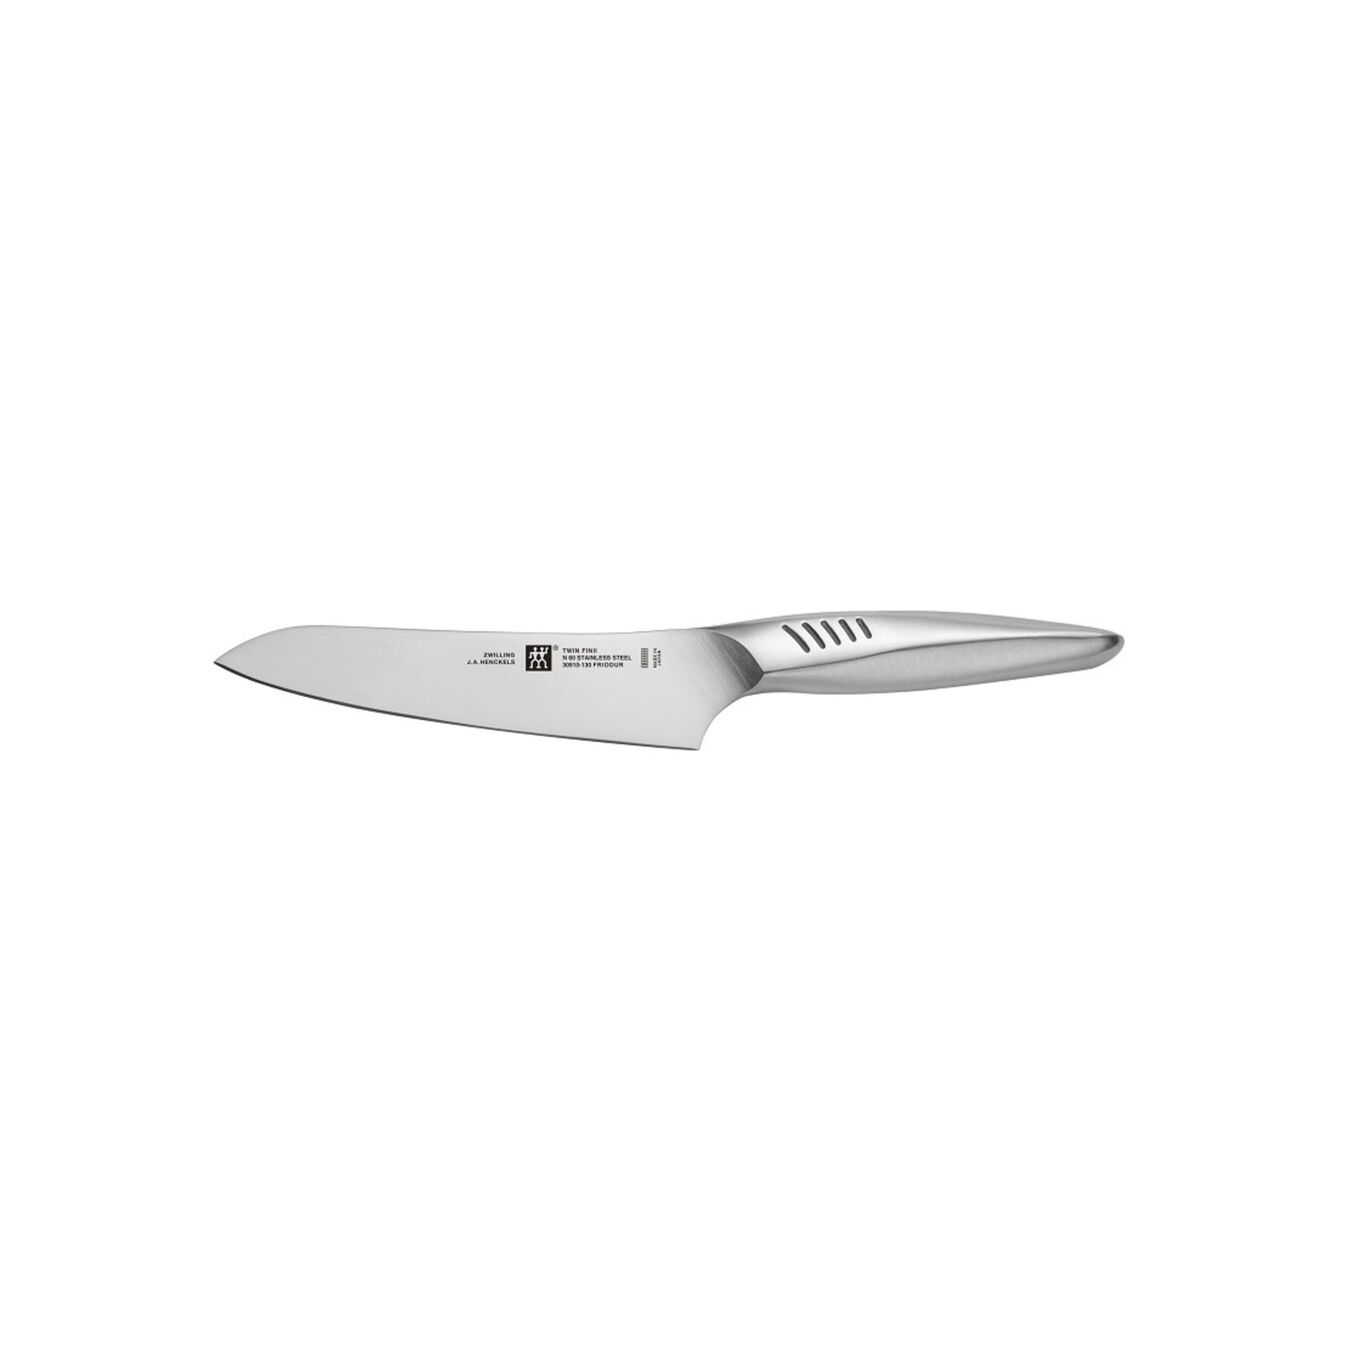 Couteau de chef compact 13 cm, Argent, Acier inoxydable,,large 1